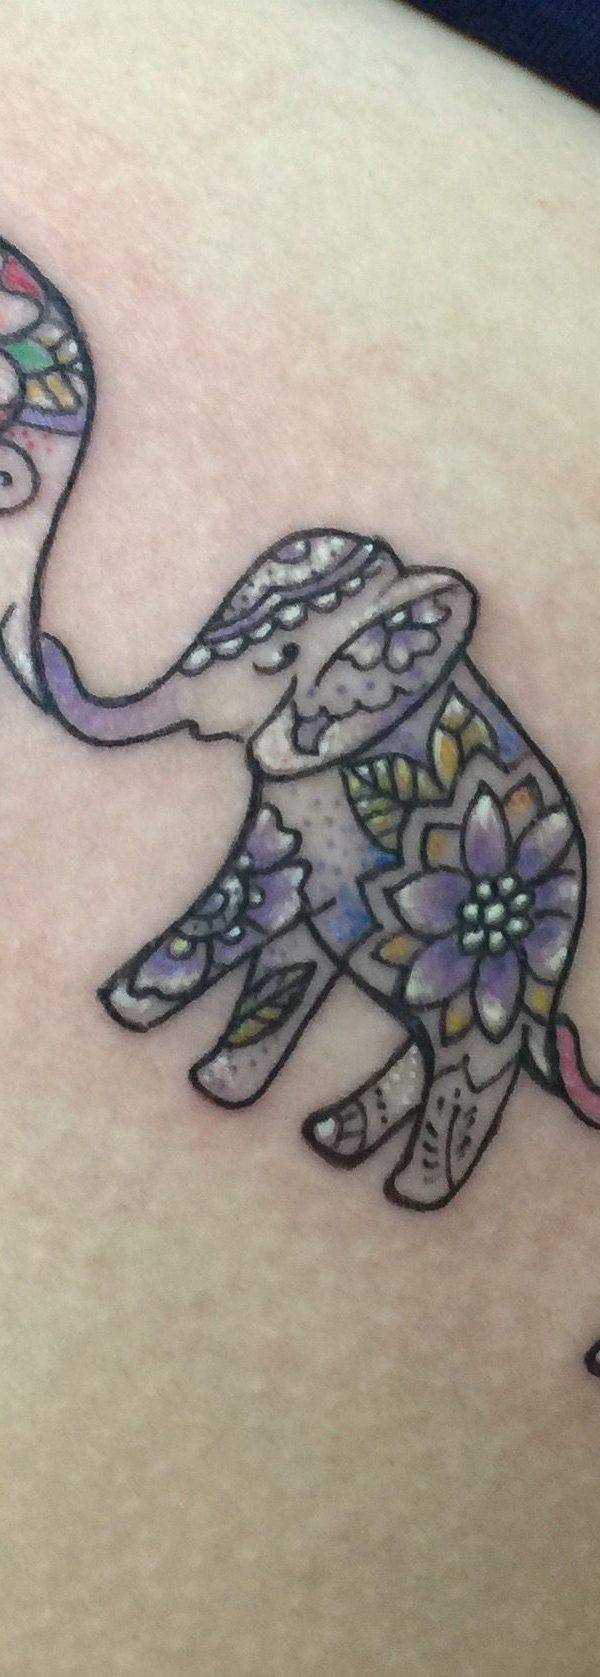 elephant and baby elephant autism tattooTikTok Search